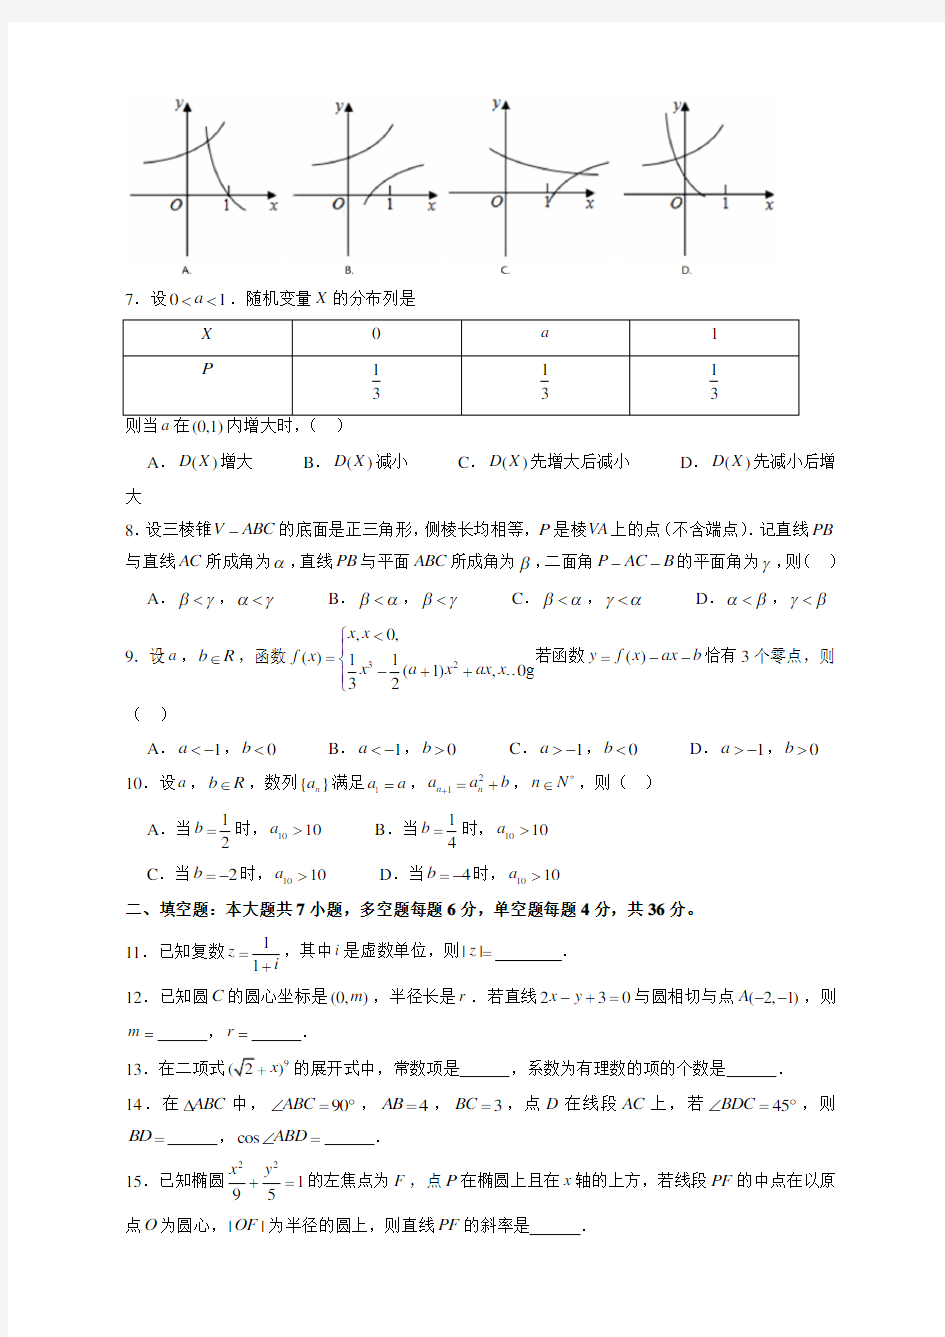 2019年浙江高考数学试题及答案解析-精华版